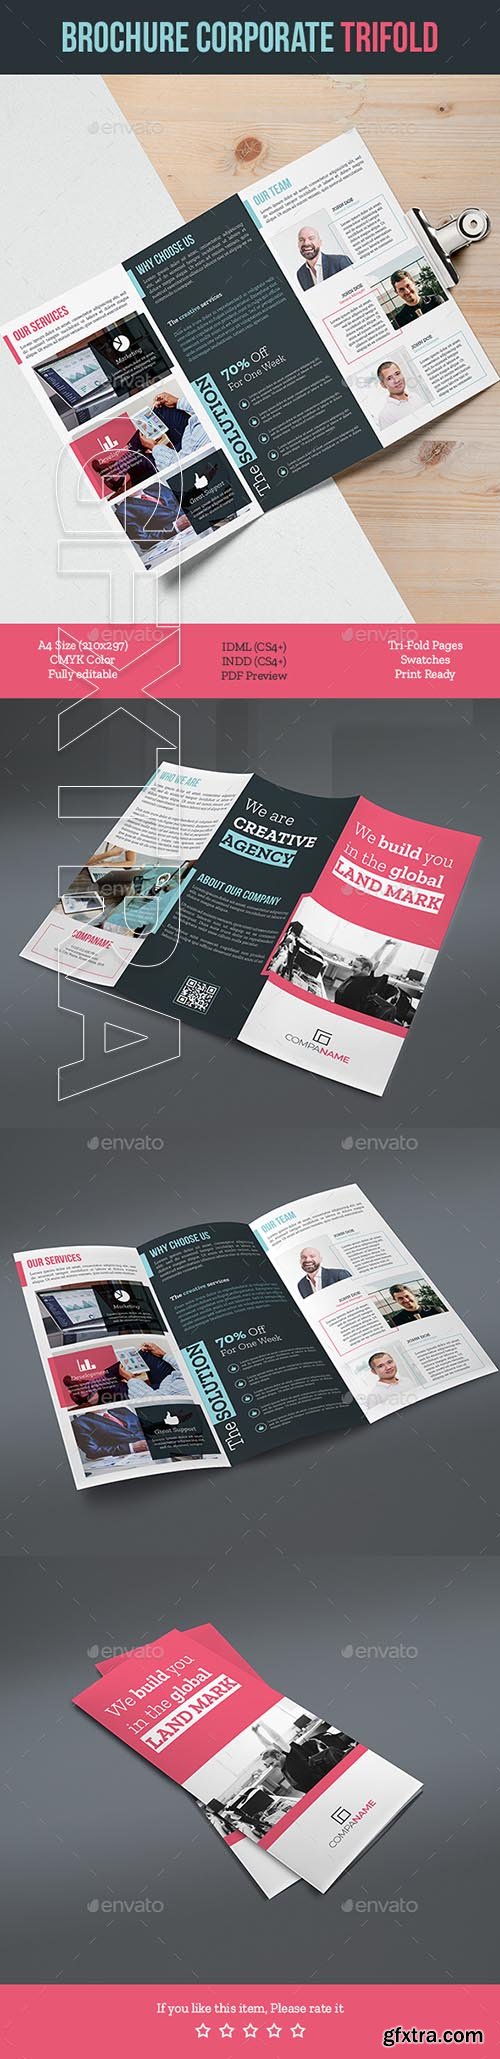 GraphicRiver - Brochure Corporate Trifold 20922082